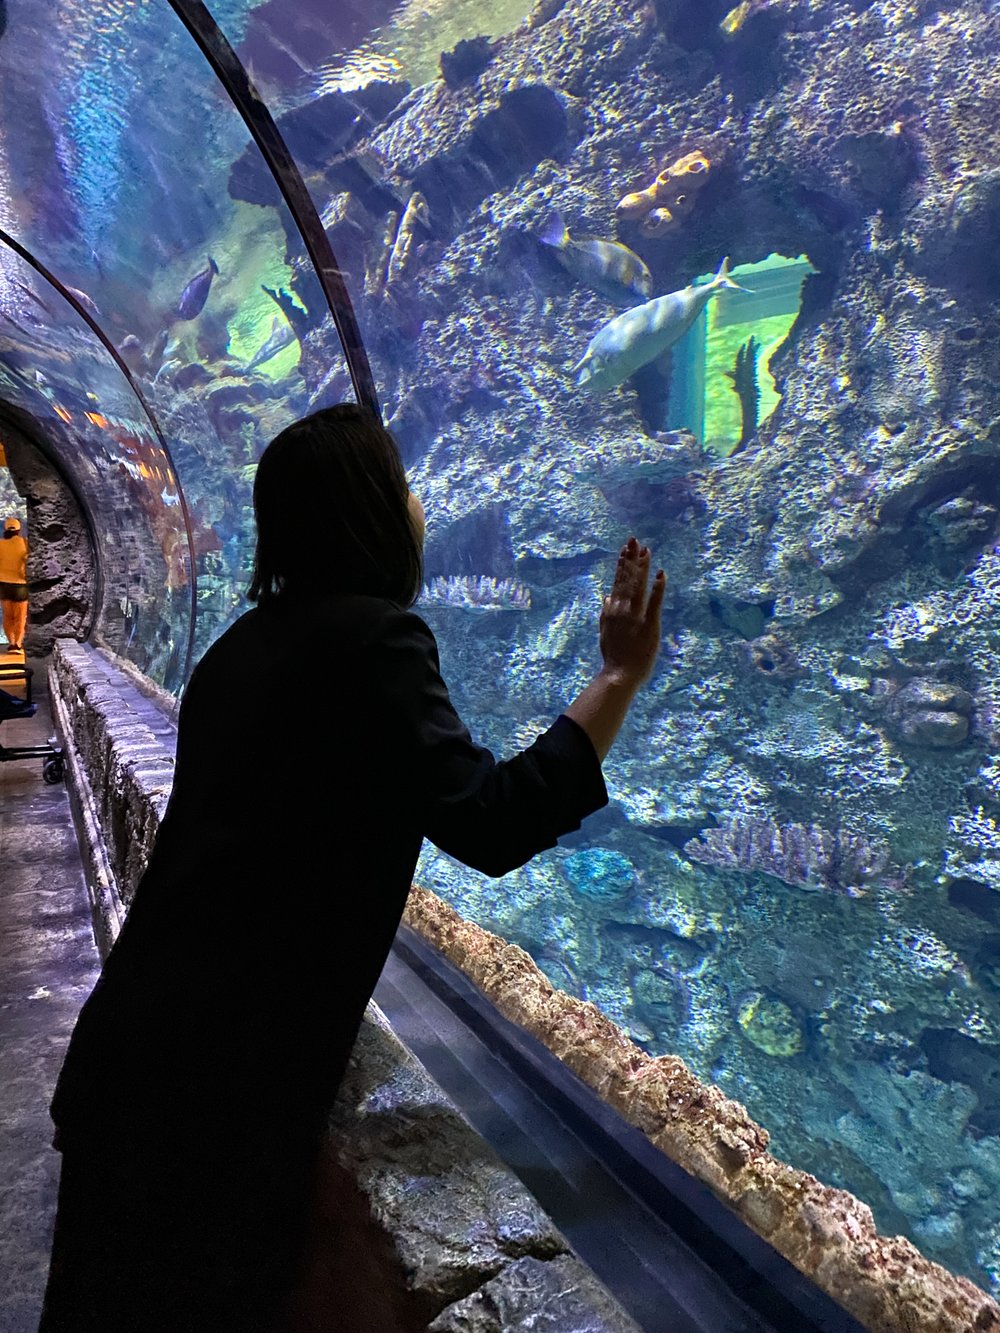 Inside the aquarium at Shark Reef Aquarium in Las Vegas Mandalay Bay